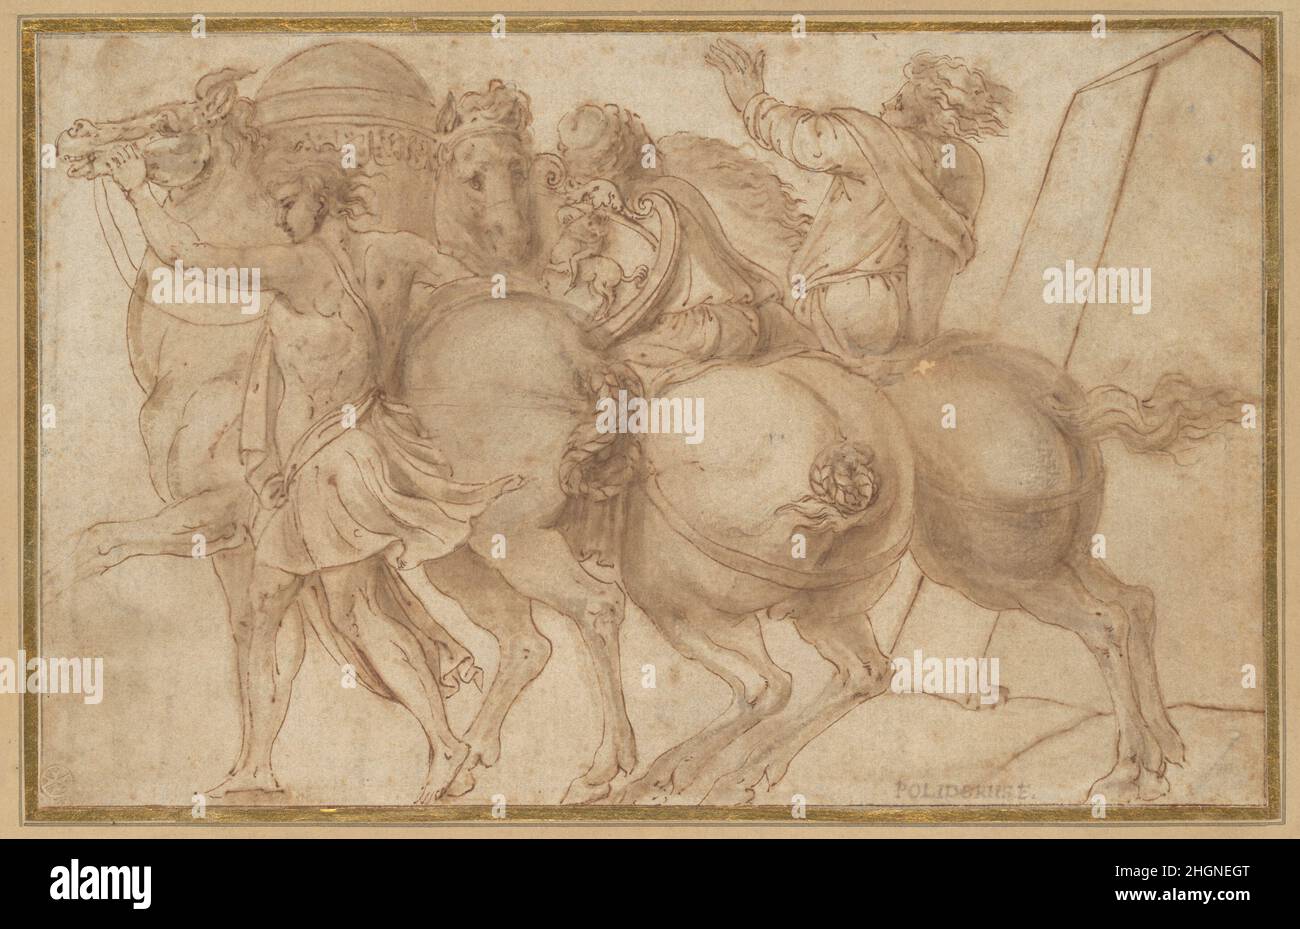 Fries mit drei Reitern 1530s nach Polidoro da Caravaggio Italienisch die Zeichnung stellt einen Teil der Geschichte von Tarquinius, dem legendären König von Rom im sechsten Jahrhundert v. Chr., und Attus, dem Augur (ein Beamter, der die Ereignisse durch Vorzeichen vorhersagt) dar. Die Komposition wurde von der gemalten Fassade eines römischen Palastes (Casa Boniauguri) kopiert, der von Polidoro da Caravaggio, einem Schüler von Raphael, der für solche Werke berühmt war, ausgeführt wurde. Dieses Blatt ist Teil einer Gruppe von Zeichnungen und Stichen (einschließlich 1975,1.407), die verschiedene Teile des verlorenen Gemäldes darstellen und zusammen helfen, seine Ursprünge zu rekonstruieren Stockfoto